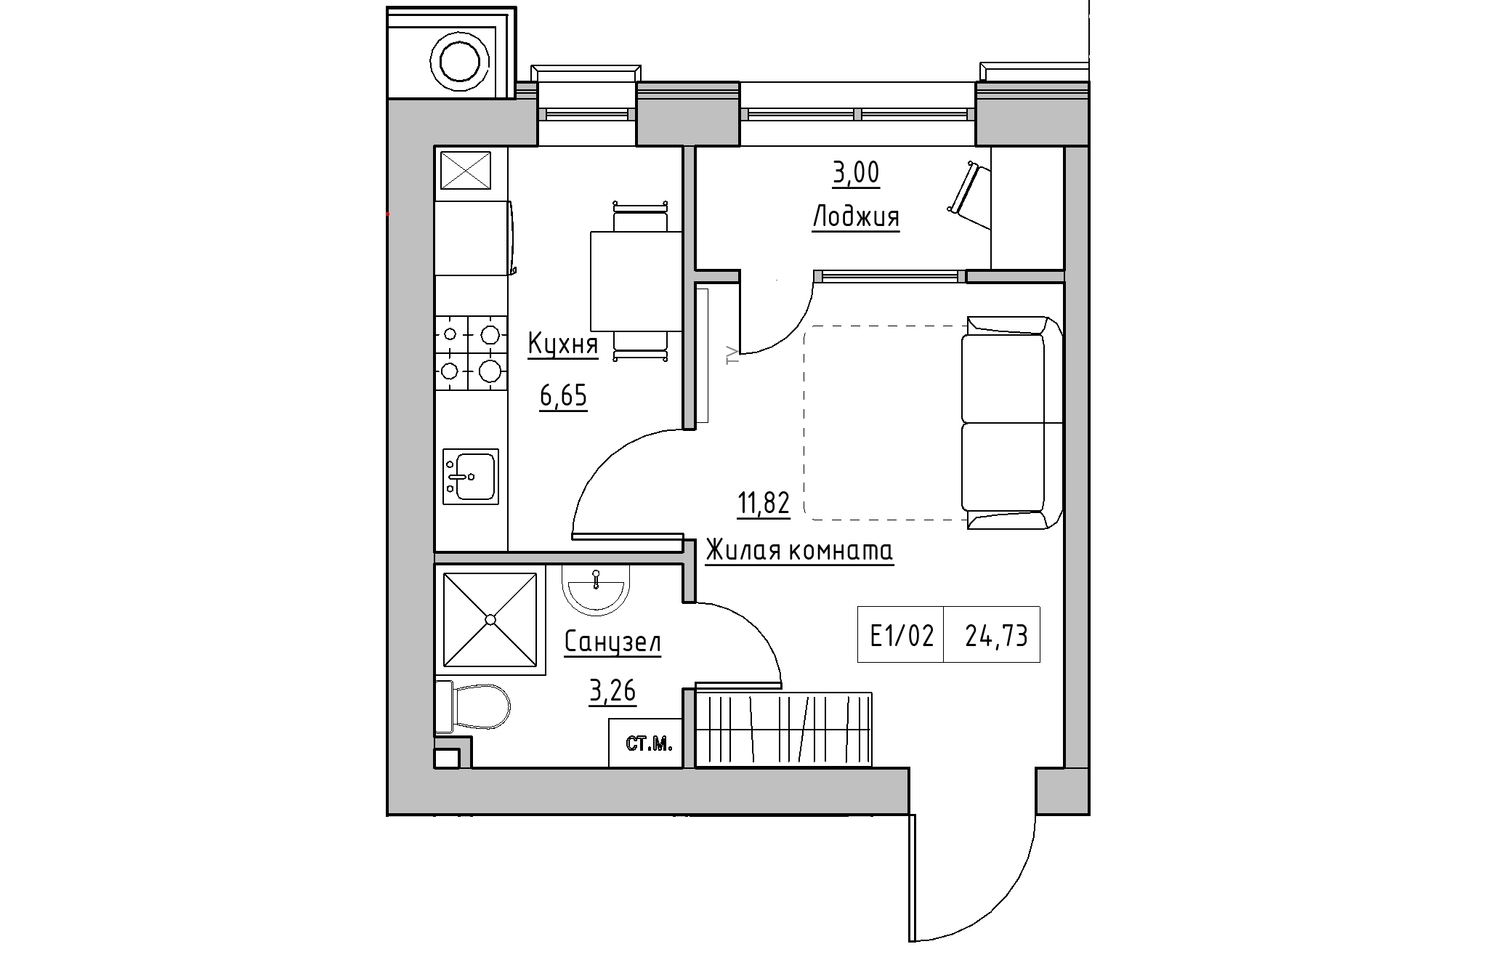 Планування 1-к квартира площею 24.73м2, KS-010-04/0004.